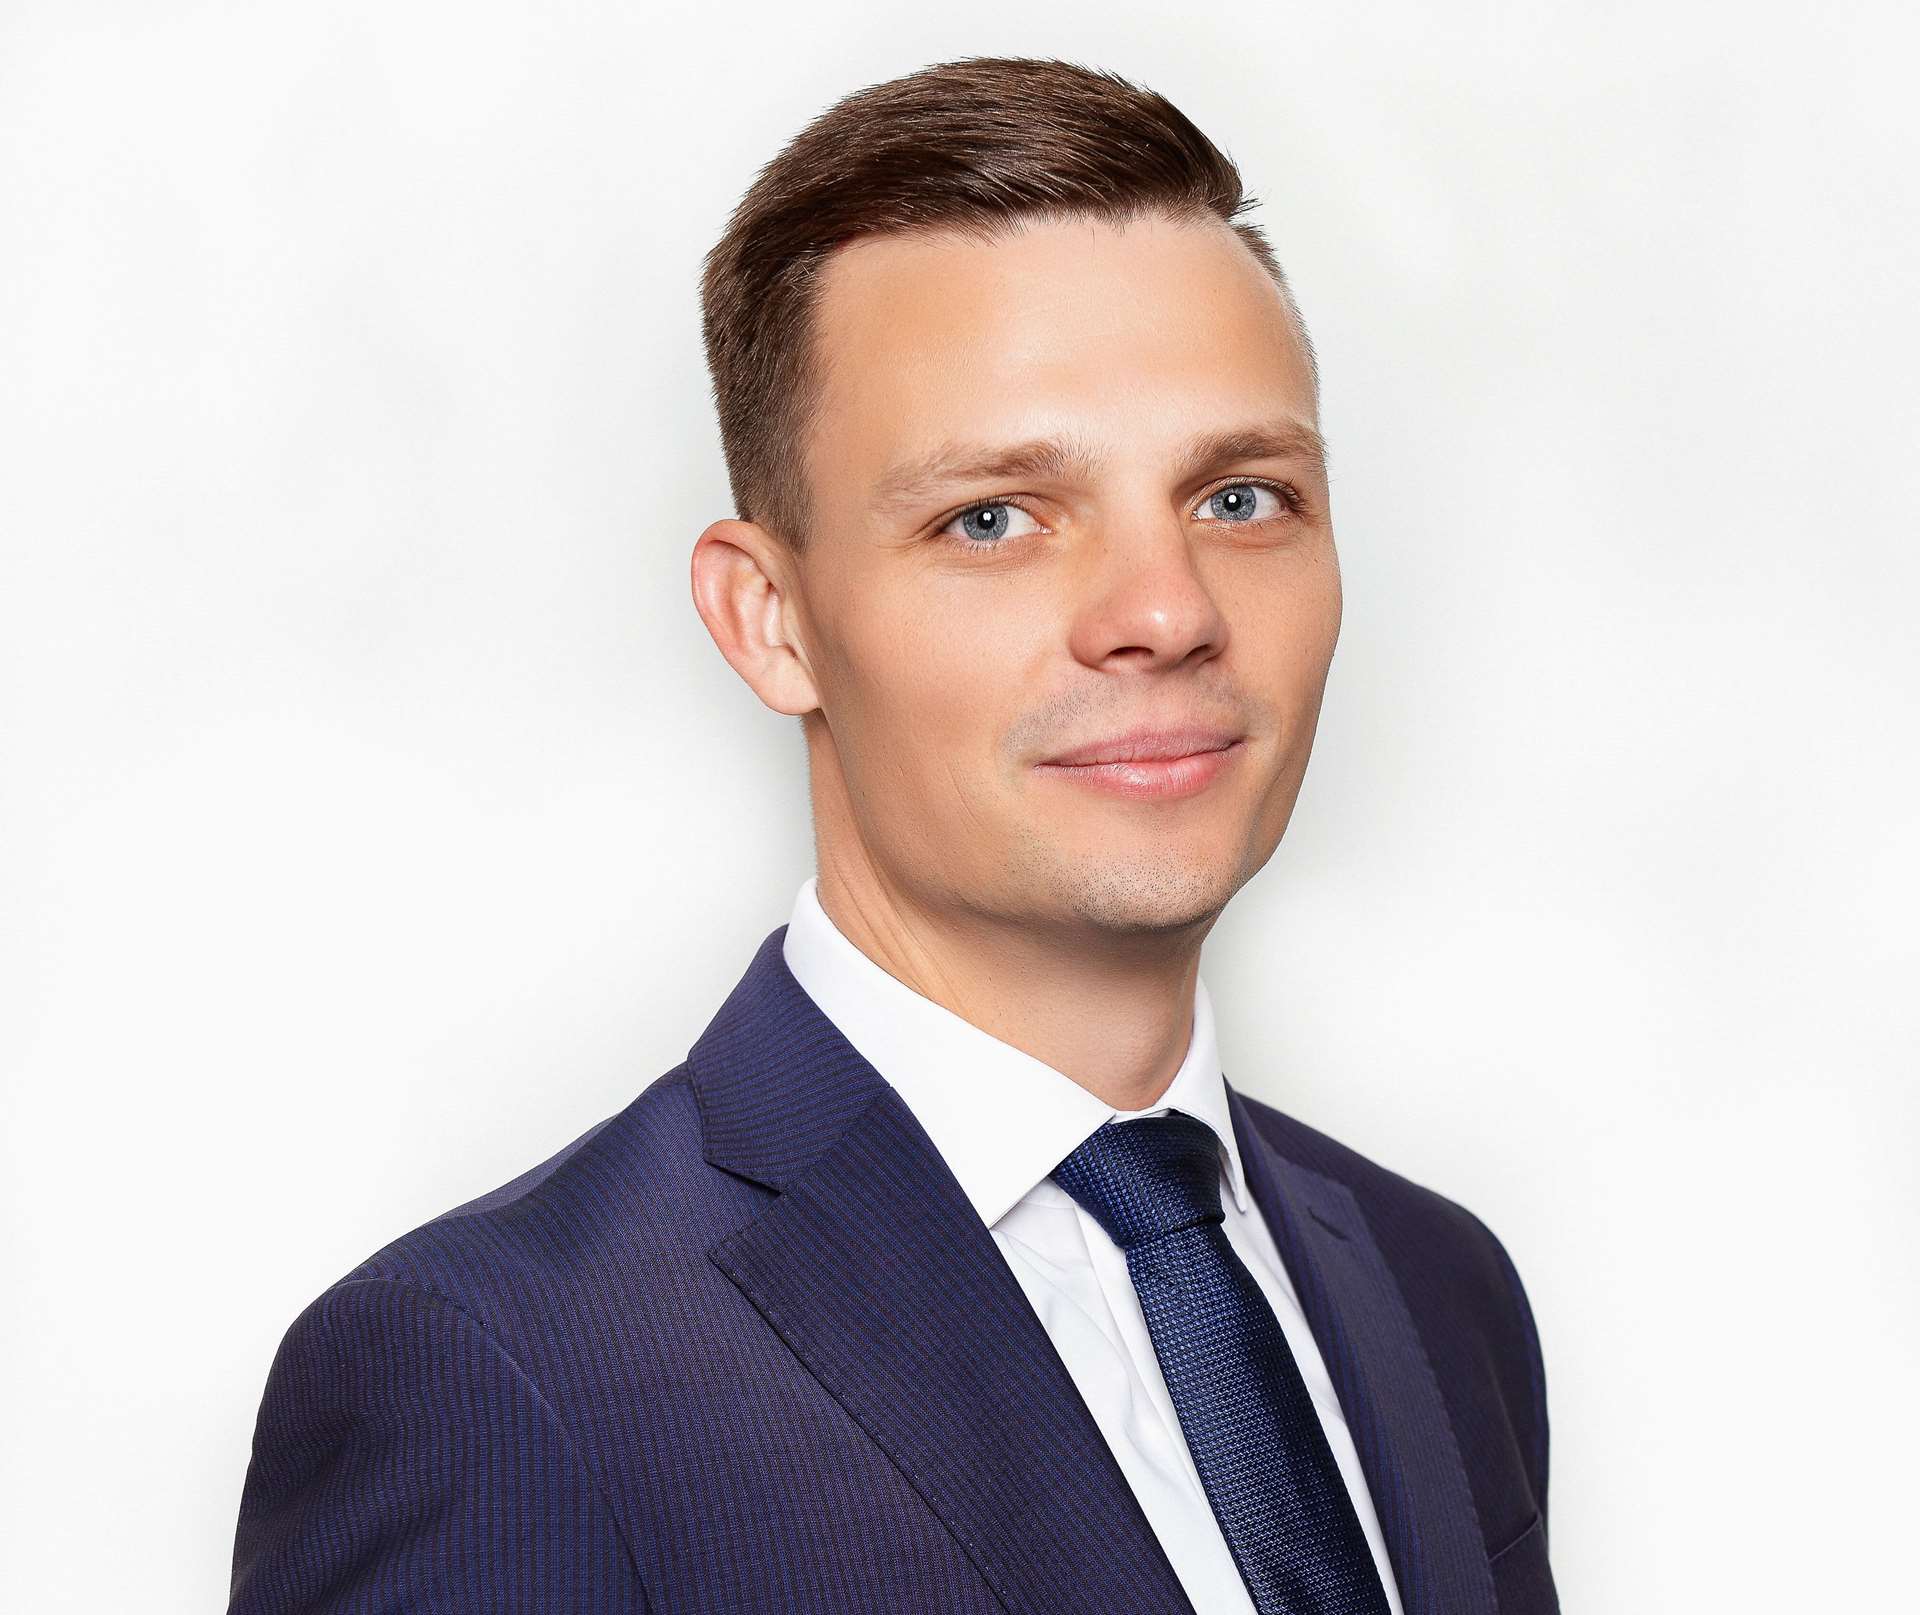 Paulius Daukša, Head of Vilnius audit department